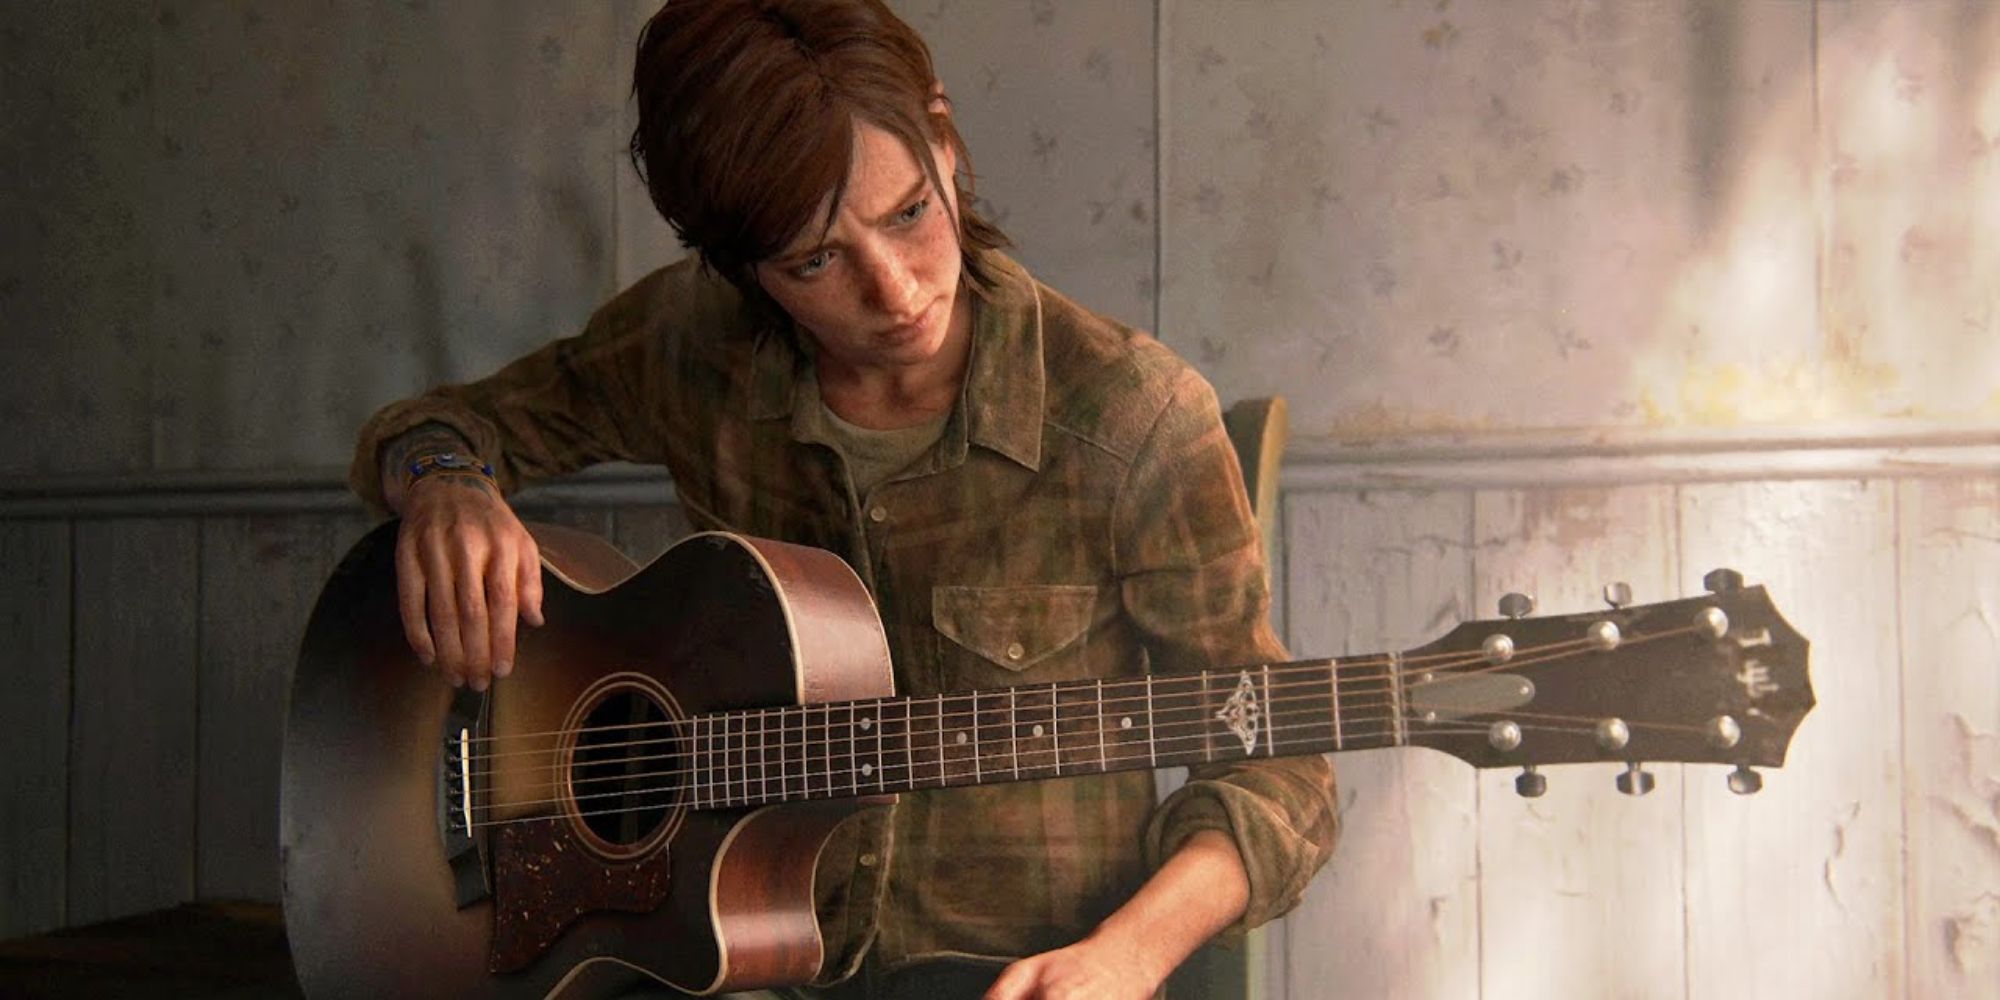 Ellie playing Joel's guitar